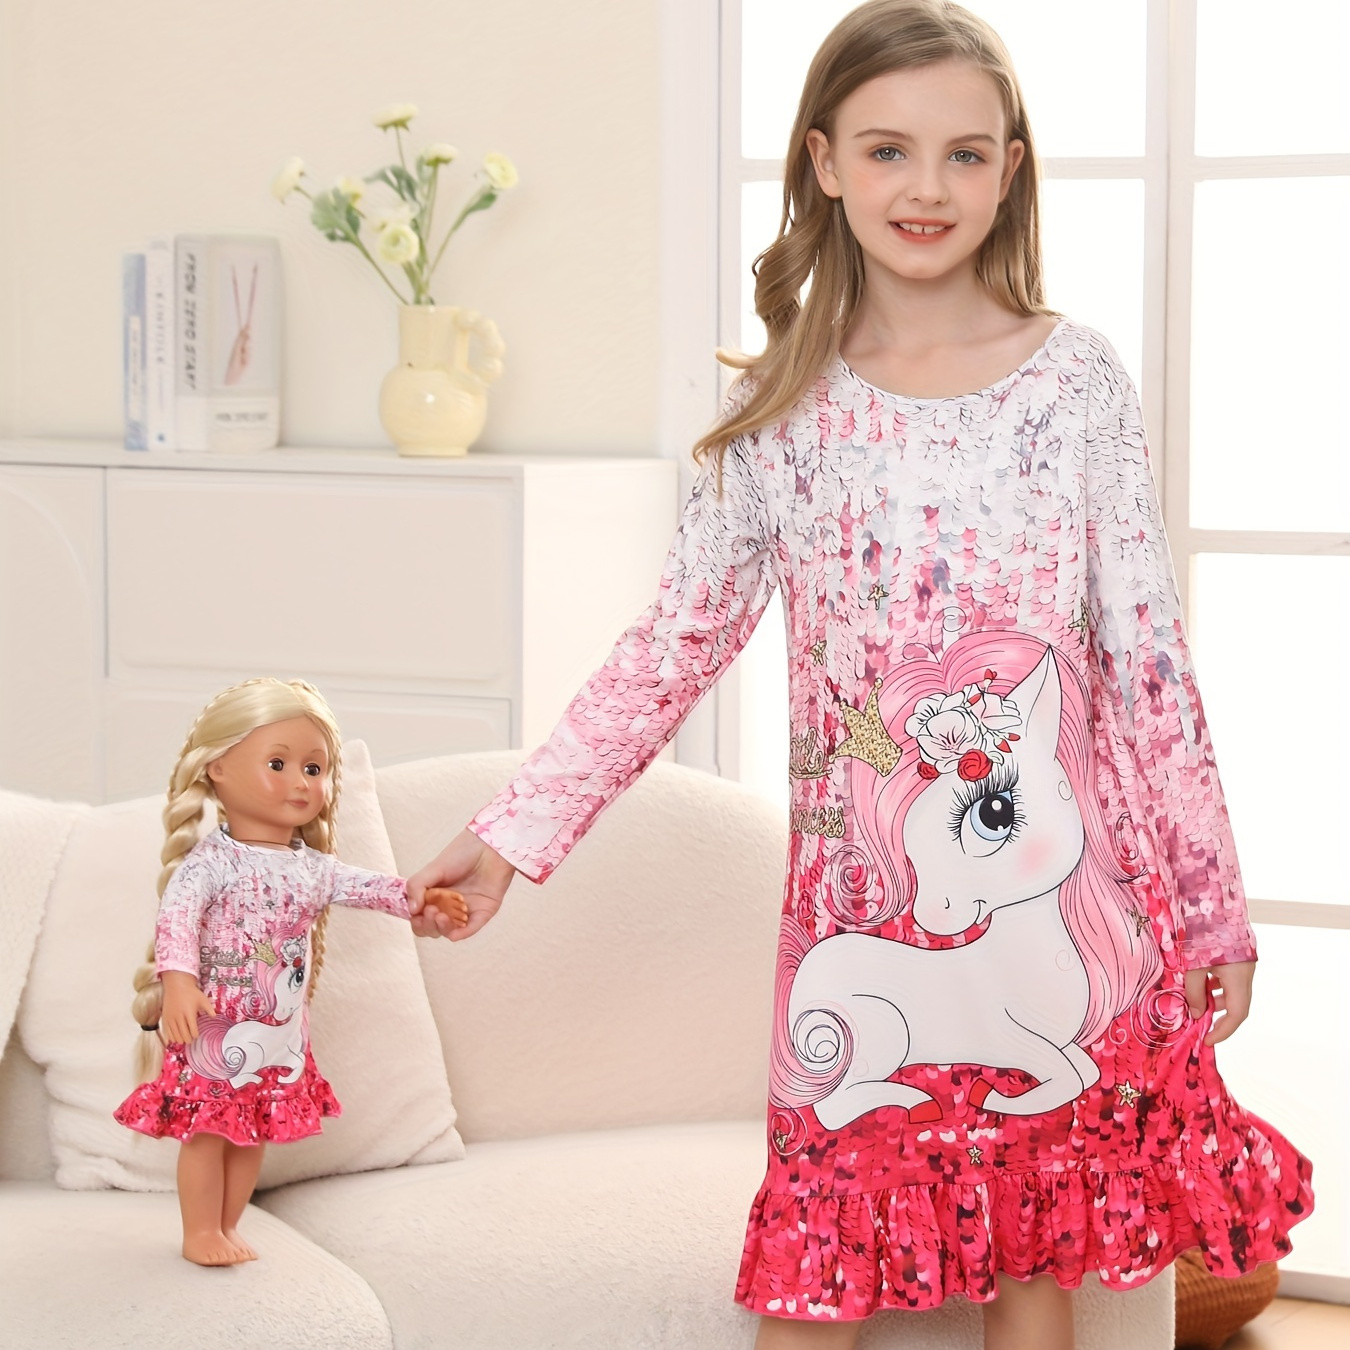  Leveret - Pijama a juego para muñeca y niñas, para niños  grandes y pequeños, pijama de unicornio (4 a 14 años) se adapta a muñecas  americanas, 4 años : Ropa, Zapatos y Joyería